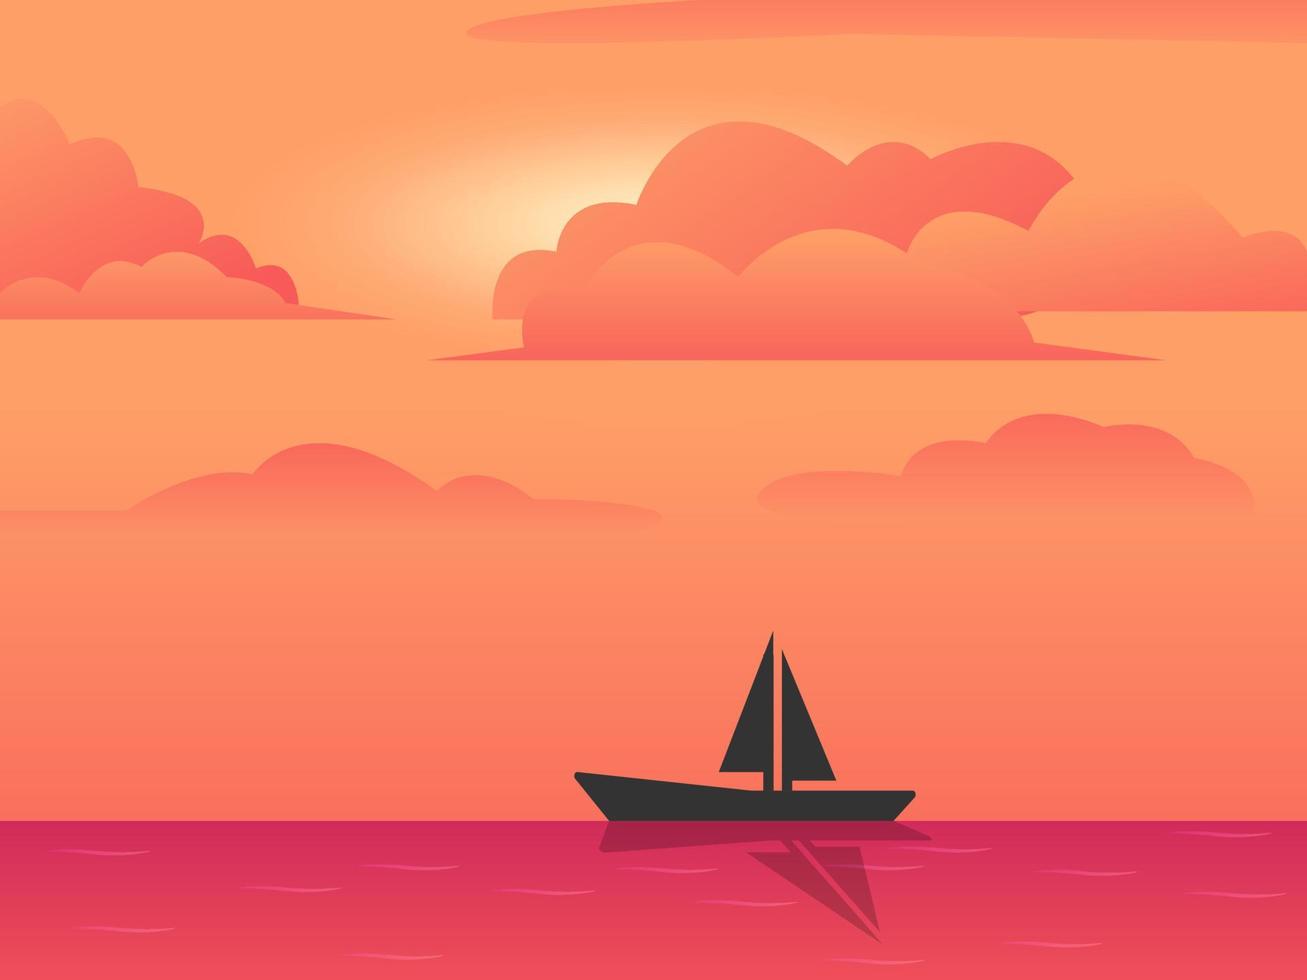 puesta de sol o amanecer en el océano, fondo de paisajes naturales, nubes rosas. la silueta de un barco de pesca en la superficie del agua. vista de la tarde o la mañana de ilustraciones vectoriales de dibujos animados vector